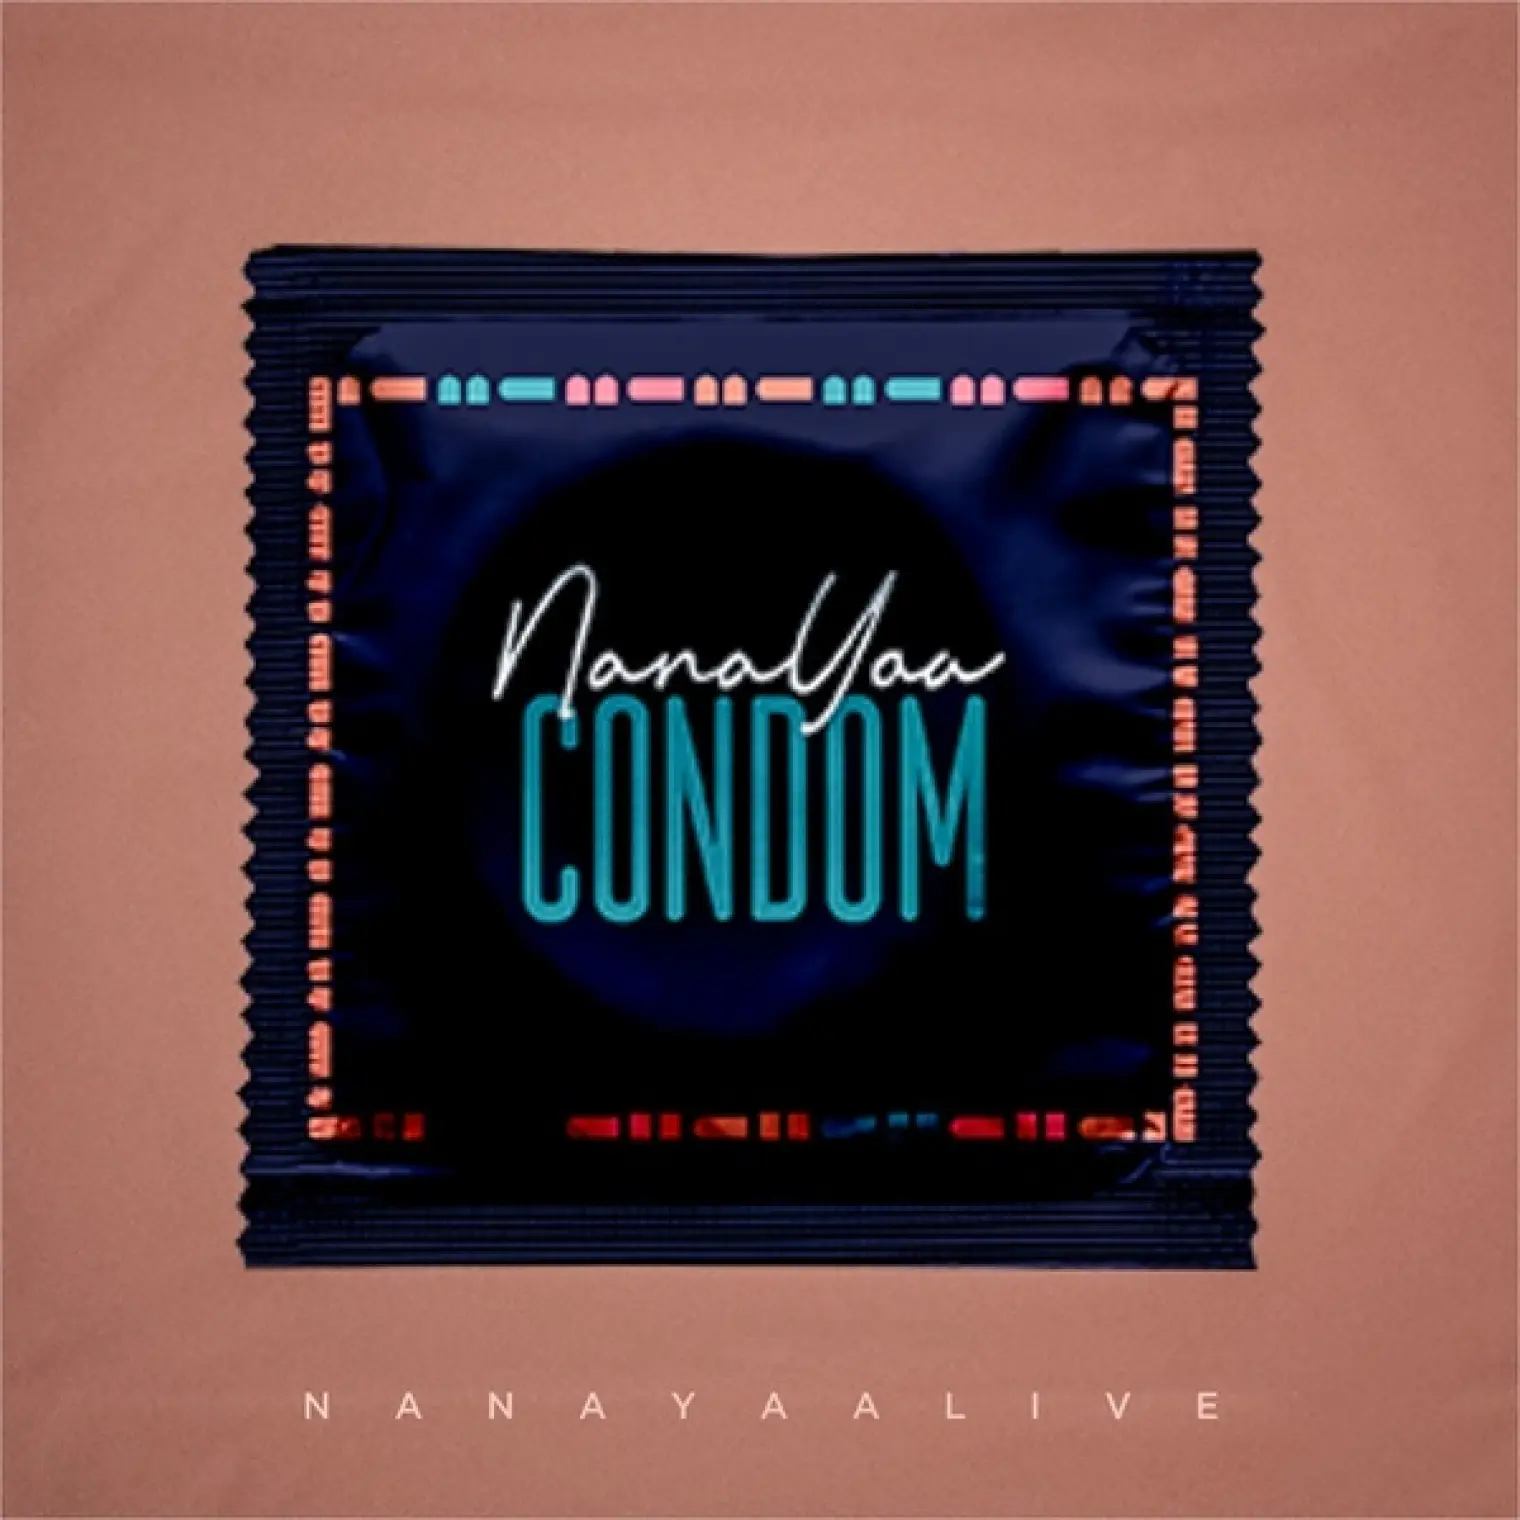 Condom -  Nanayaa 